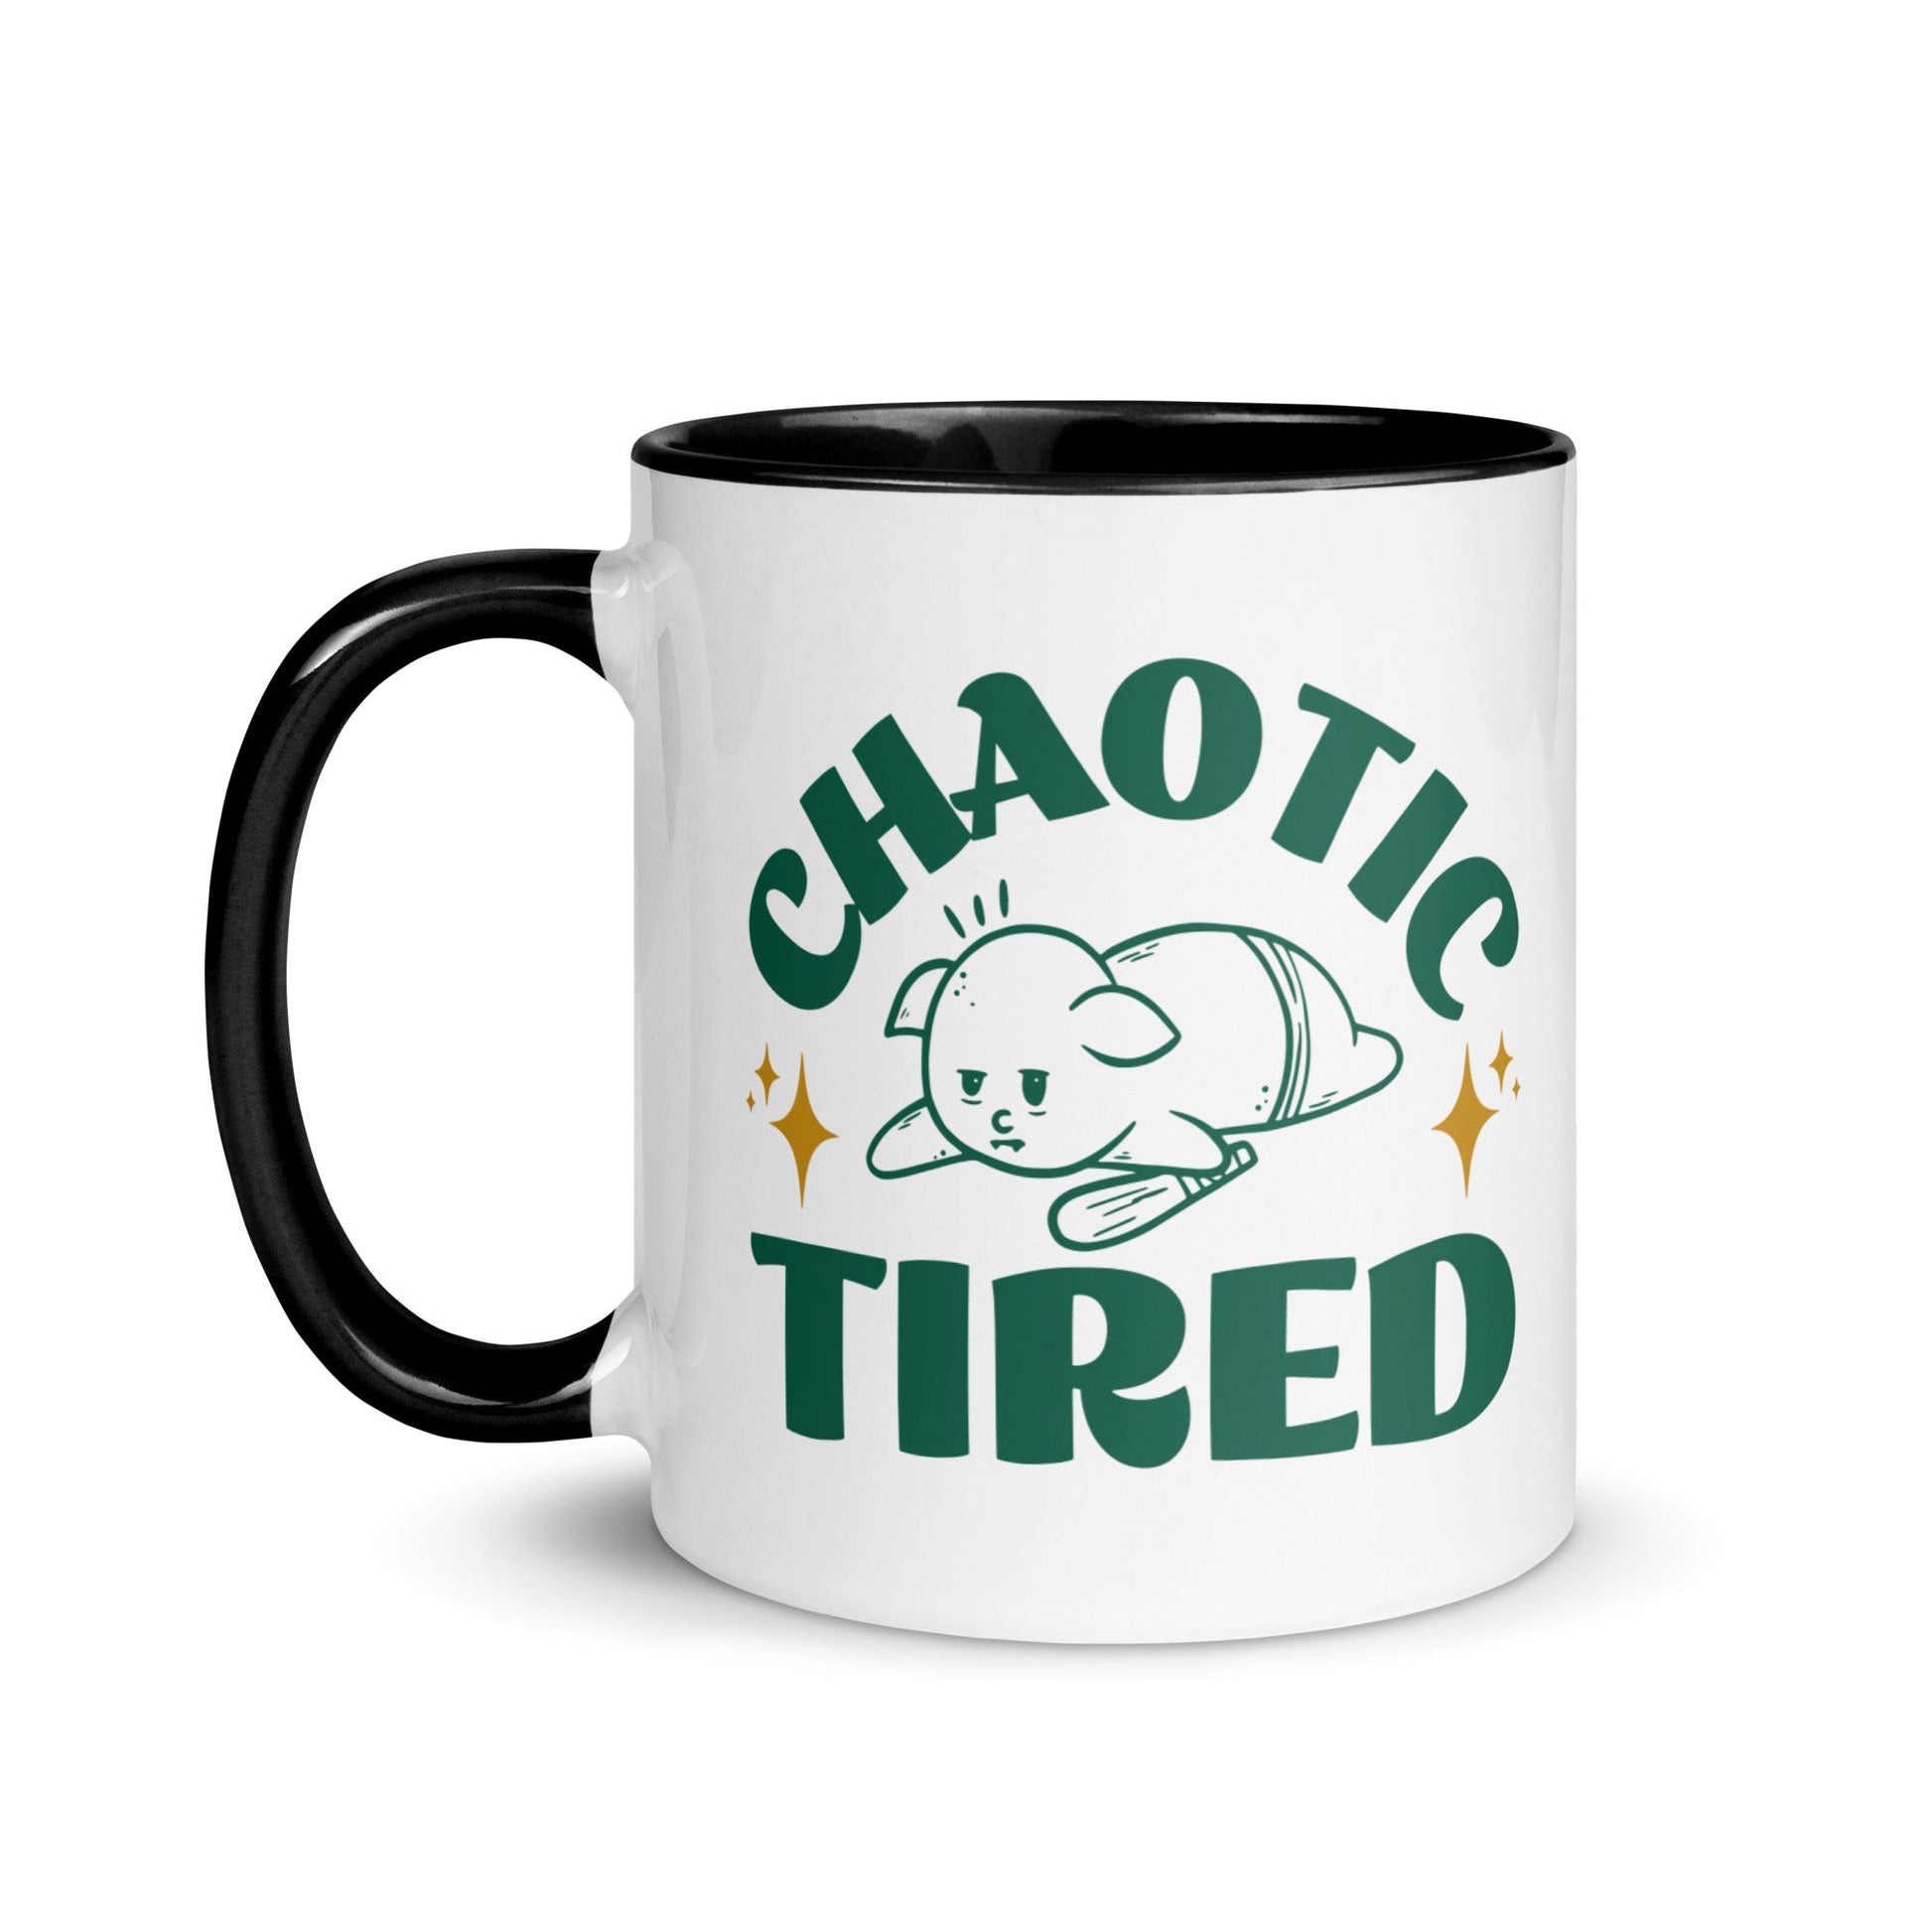 Chaotic Tired Mug - Funny Coffee Mug for Tired Goblins Mug